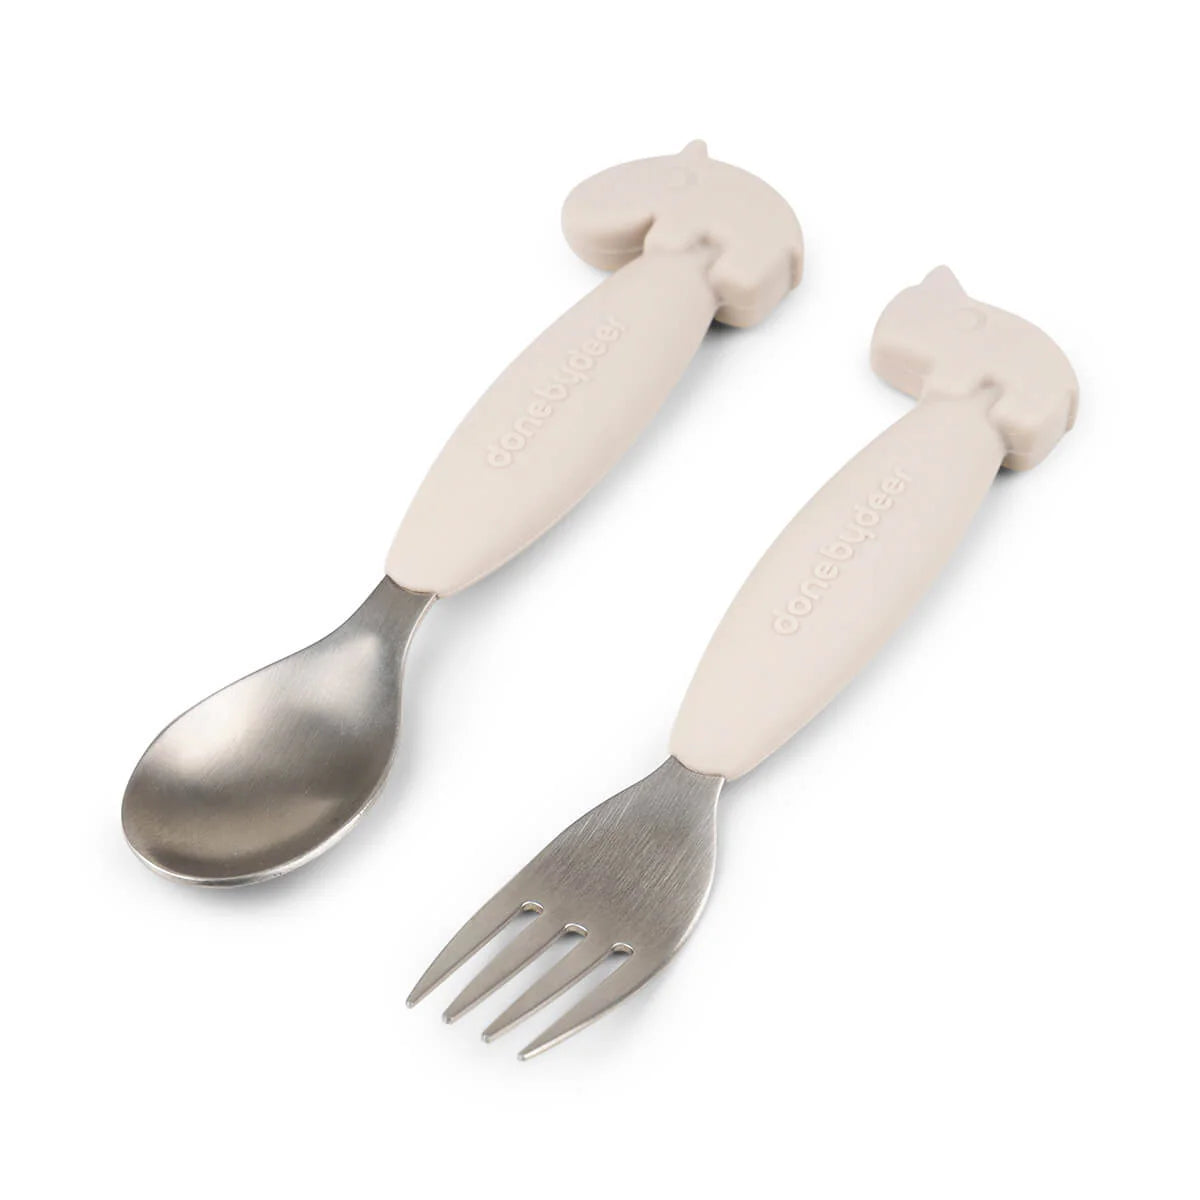 Easy-Grip Spoon & Fork Set - Deer Friends